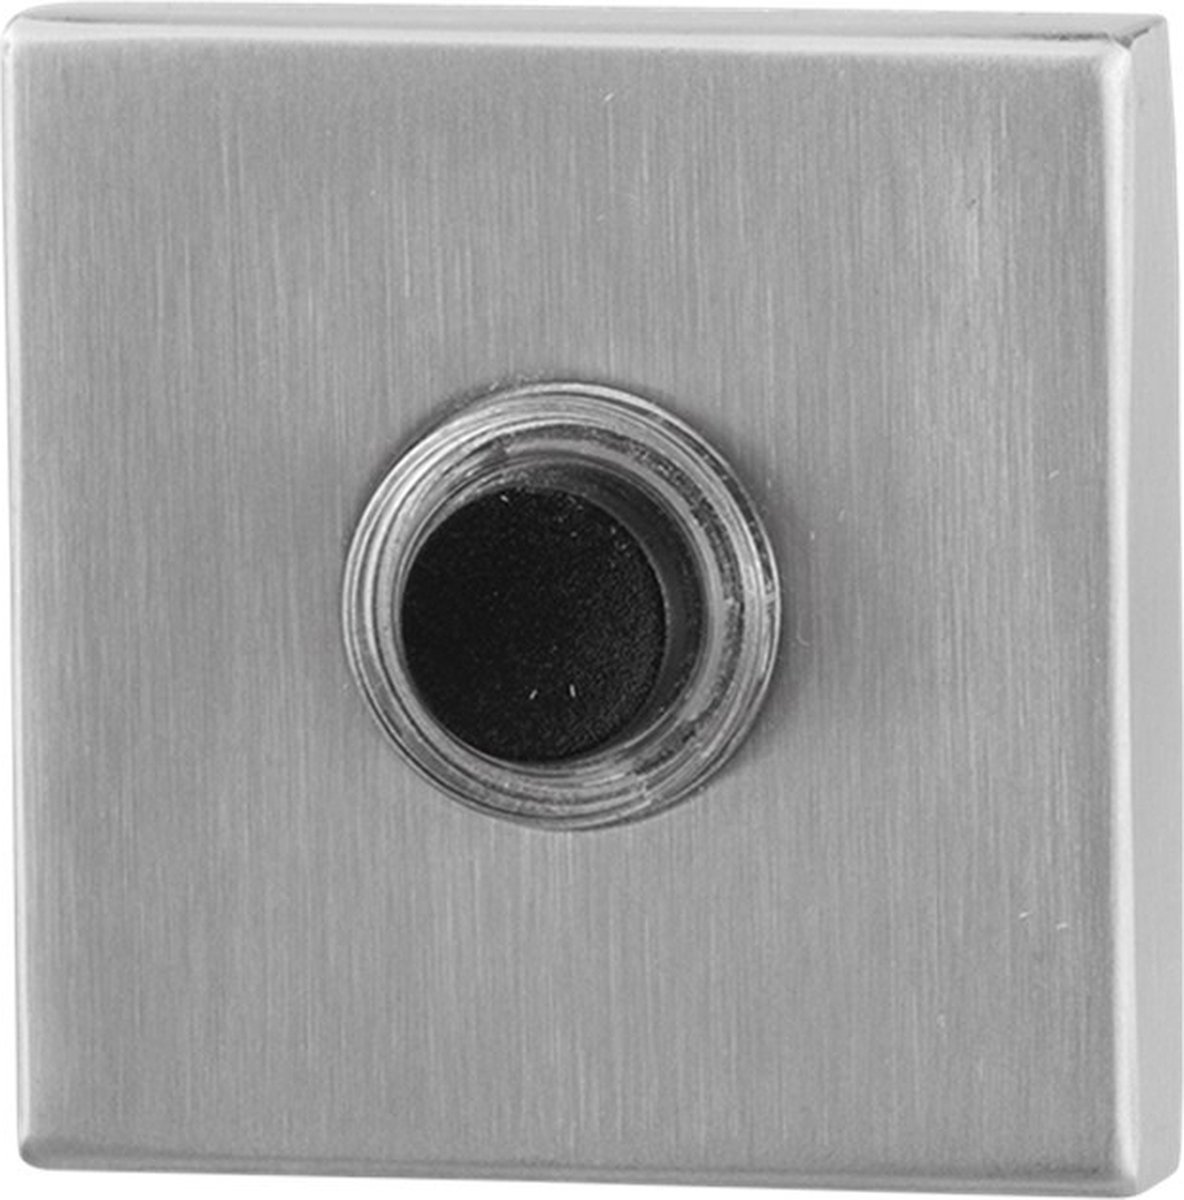 GPF9826.02 deurbel met zwarte button vierkant 50x50x8 mm RVS geborsteld